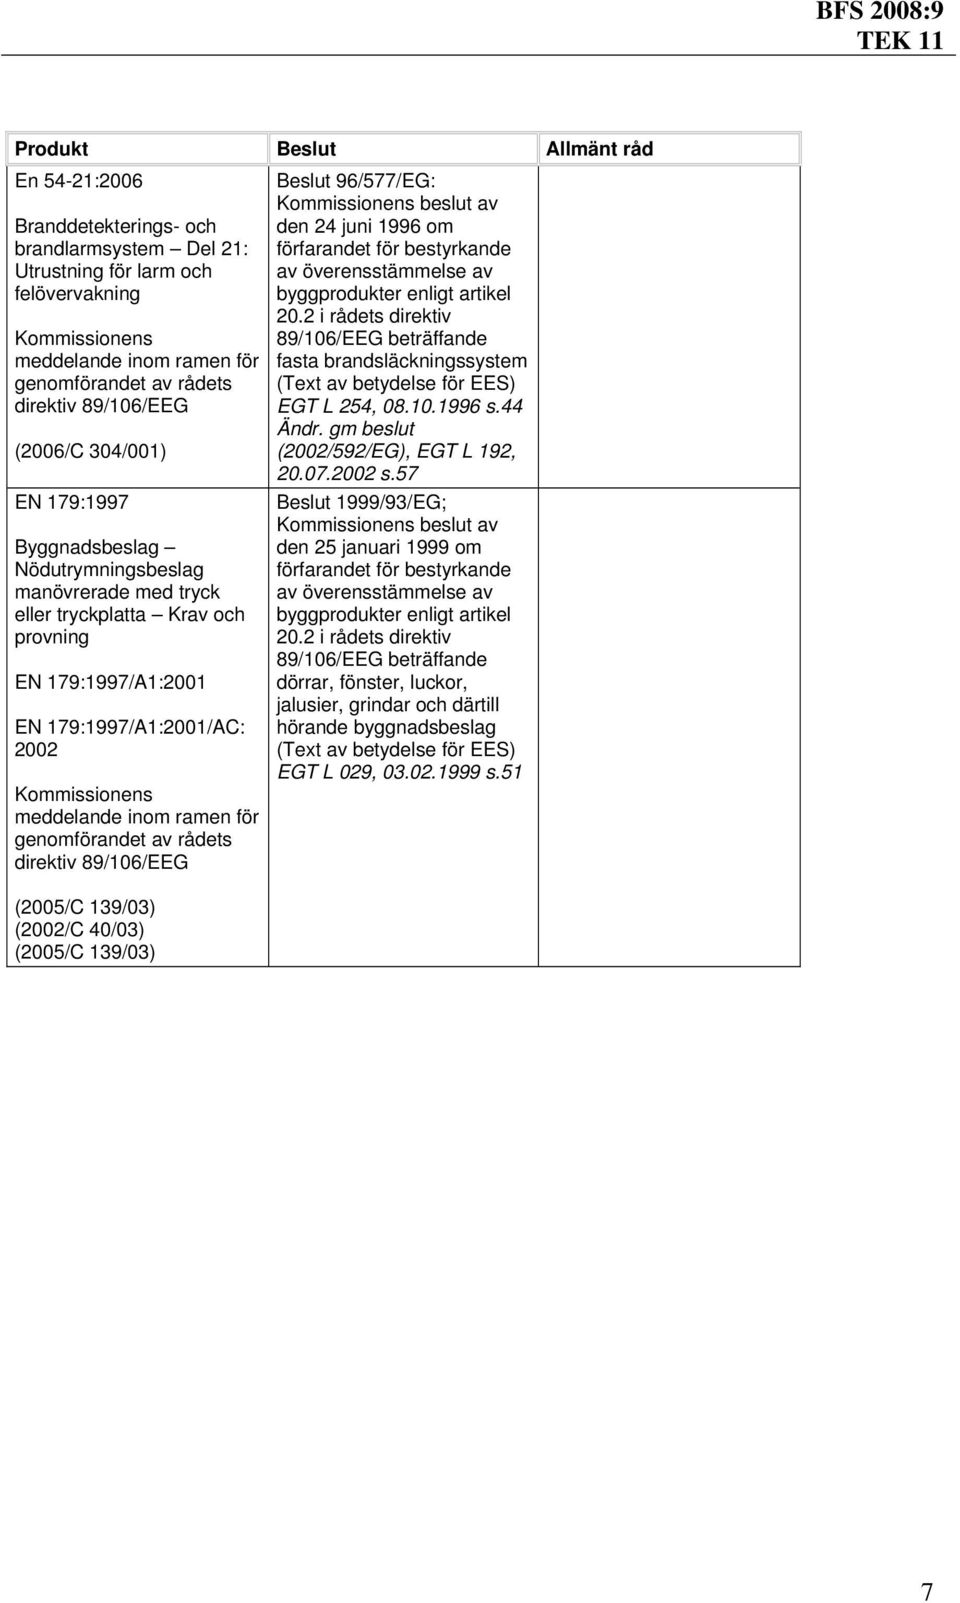 (2002/C 40/03) Beslut 96/577/EG: fasta brandsläckningssystem (Text av EGT L 254, 08.10.1996 s.44 (2002/592/EG), EGT L 192, 20.07.2002 s.